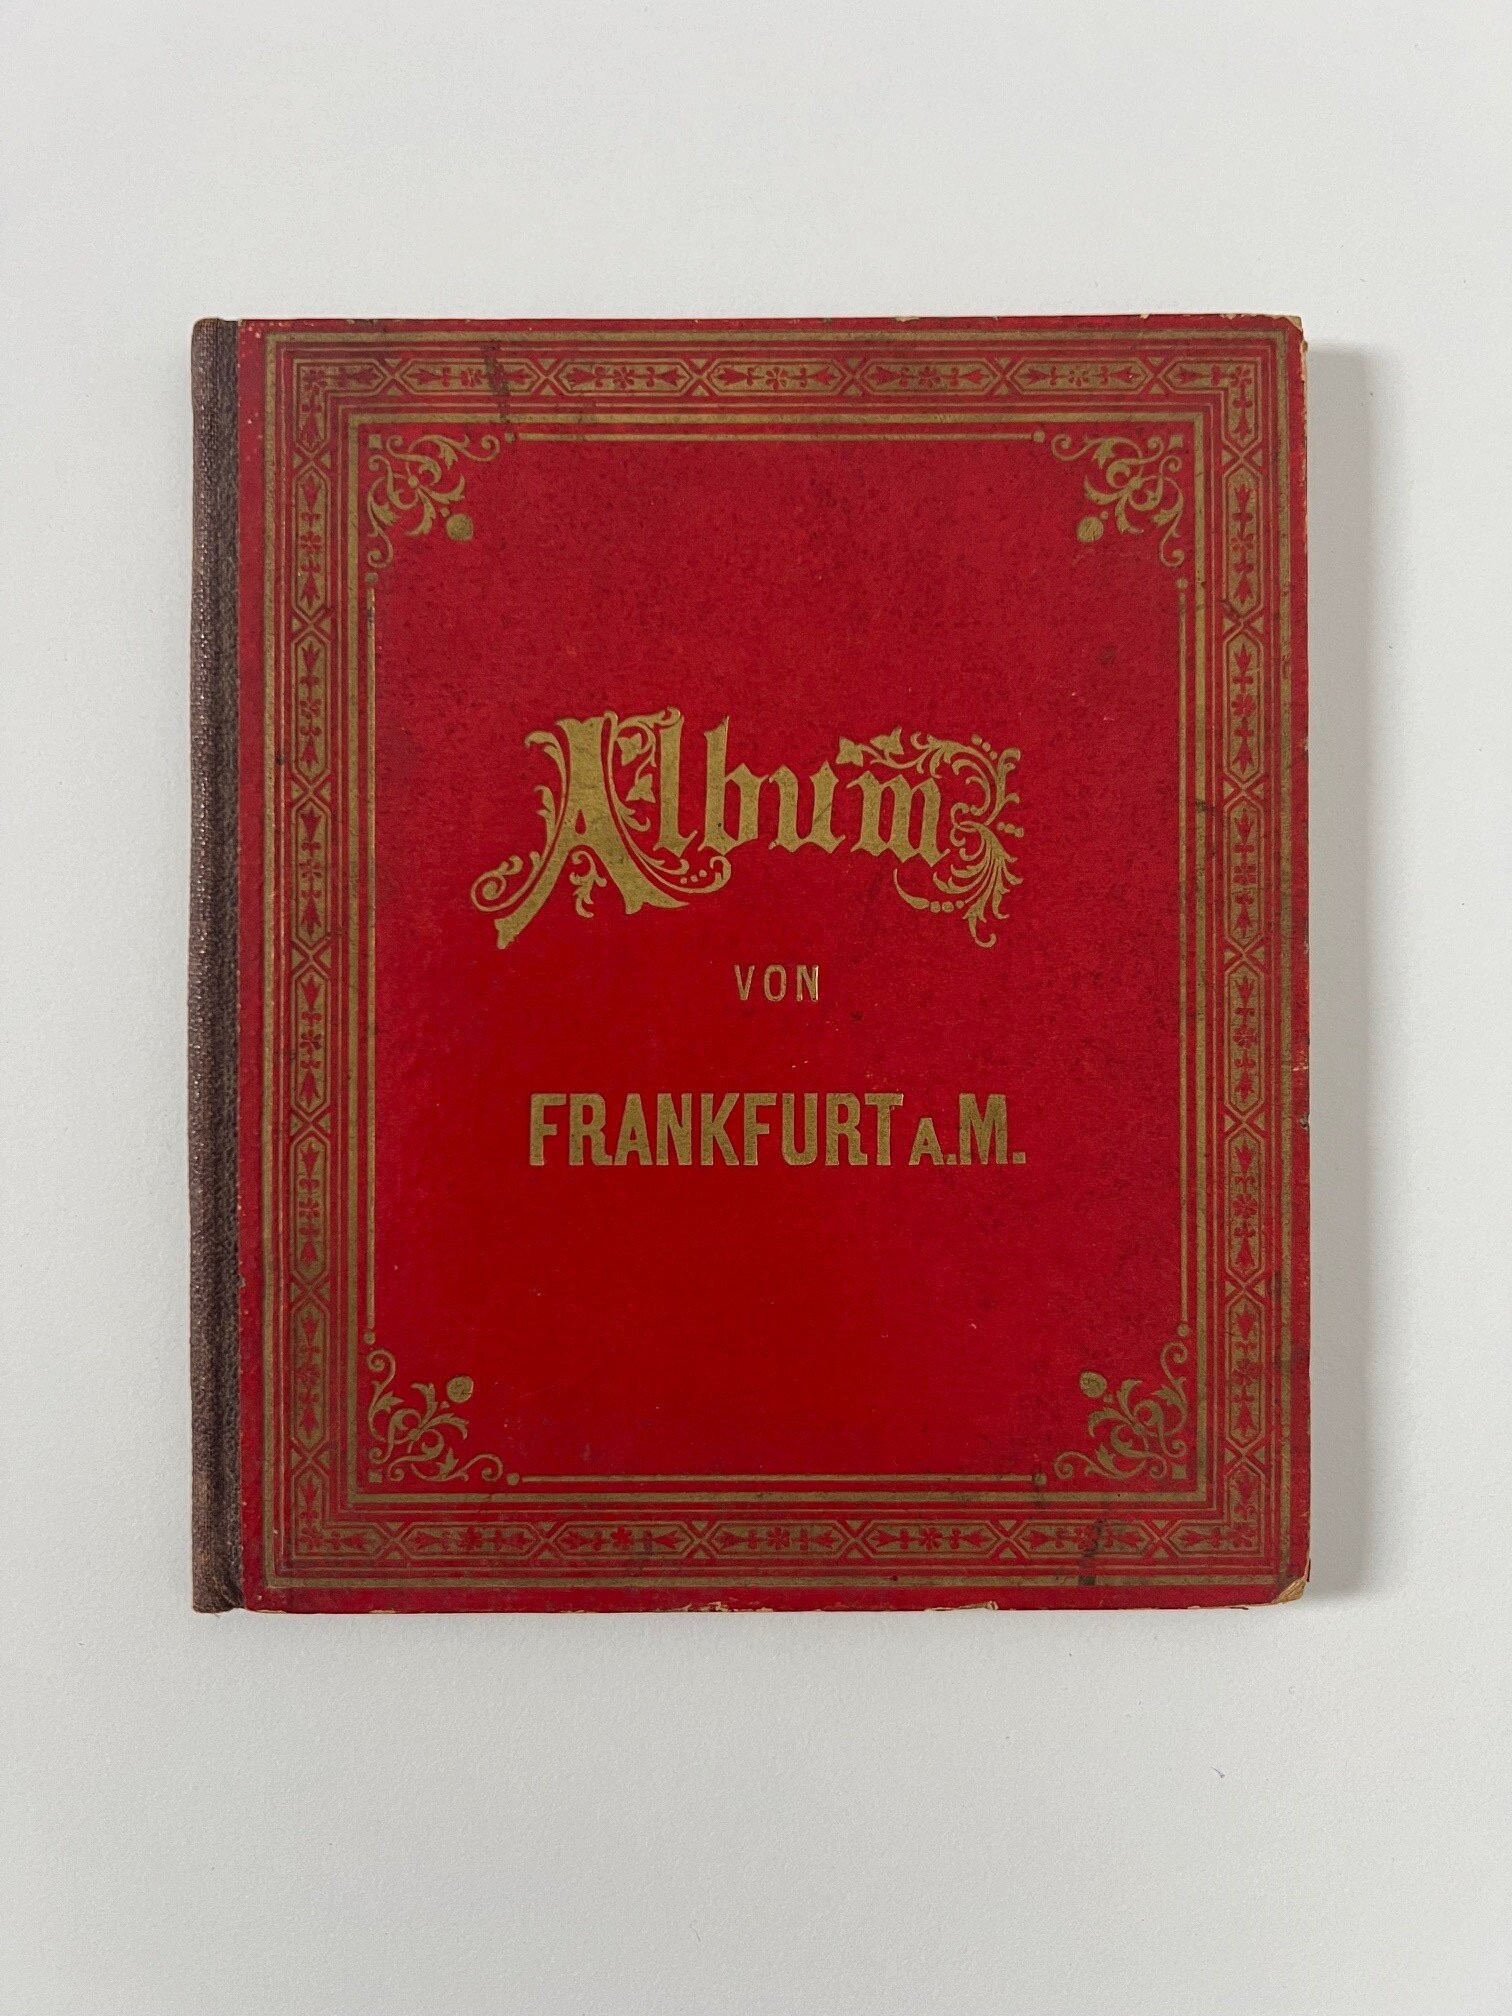 Heinrich Keller, Album von Frankfurt am Main, 24 Lithographien als Leporello, ca. 1879. (Taunus-Rhein-Main - Regionalgeschichtliche Sammlung Dr. Stefan Naas CC BY-NC-SA)